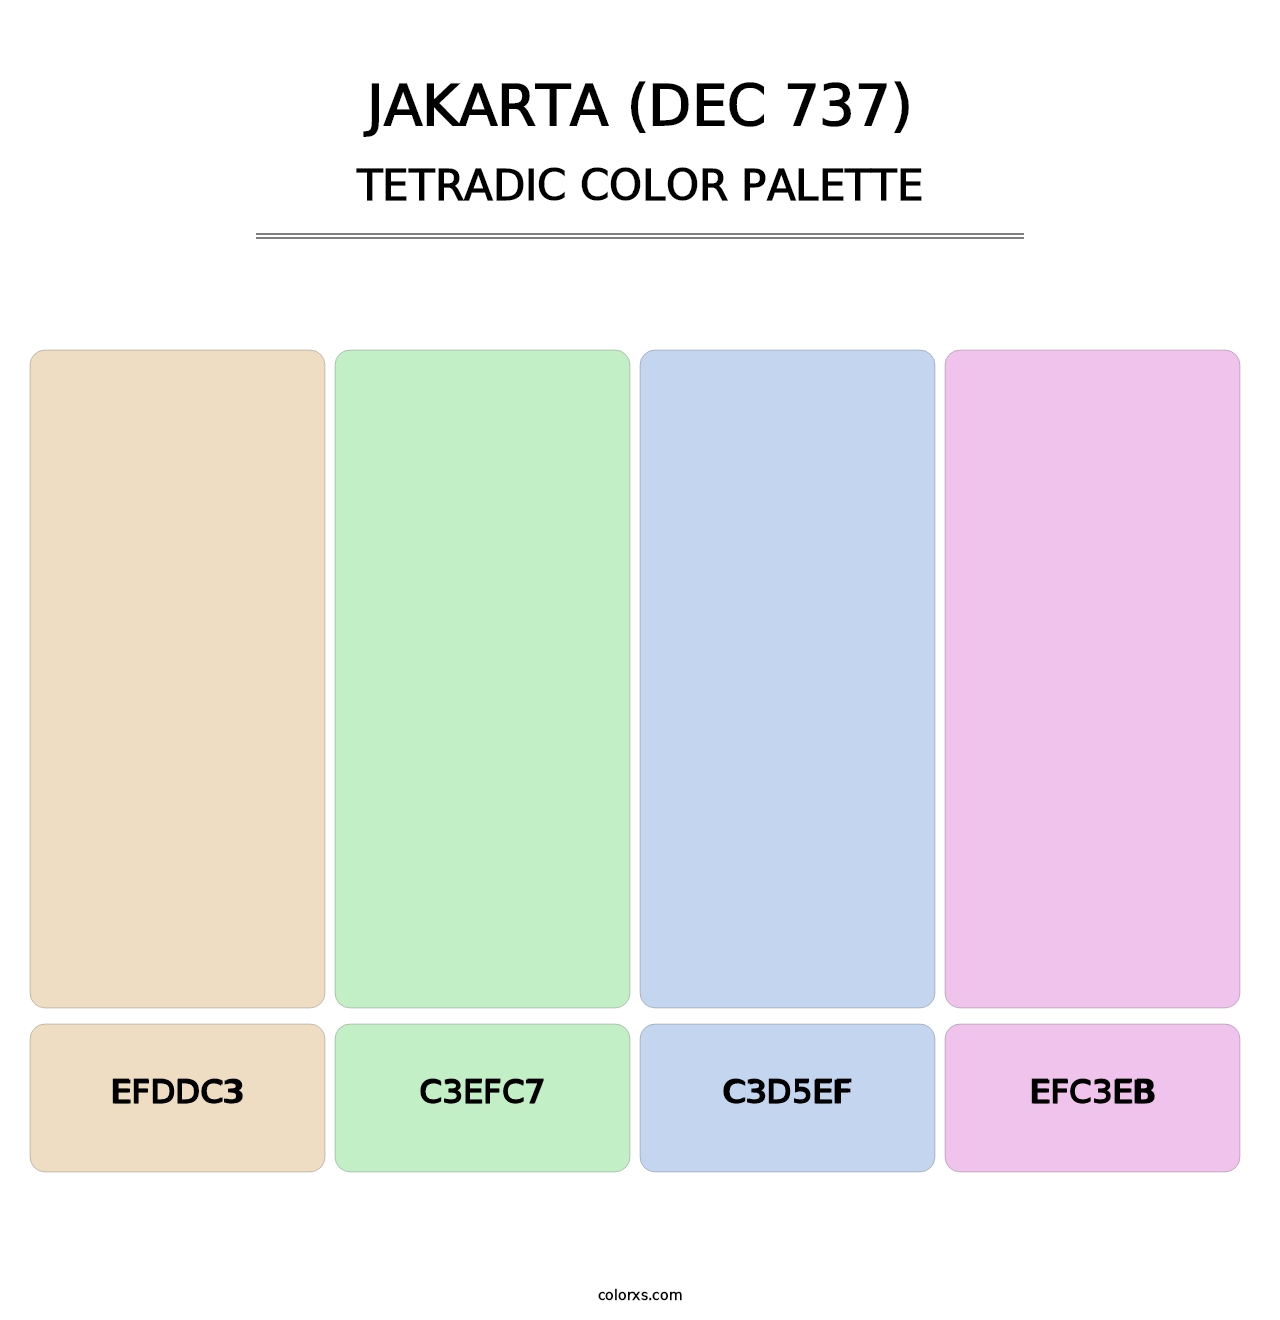 Jakarta (DEC 737) - Tetradic Color Palette